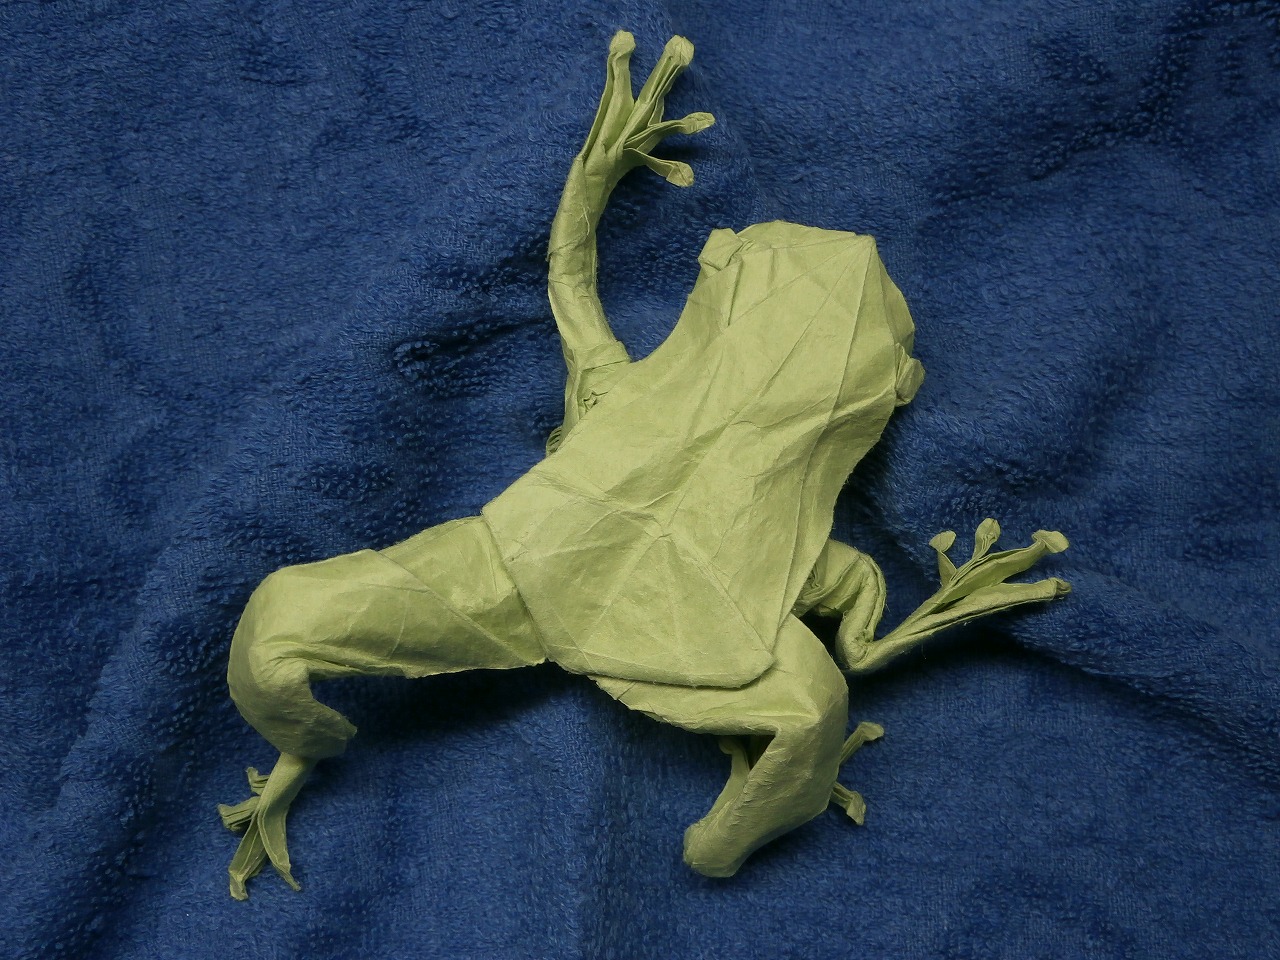 KATAKOTO ORIGAMI Origami frog on wet folding